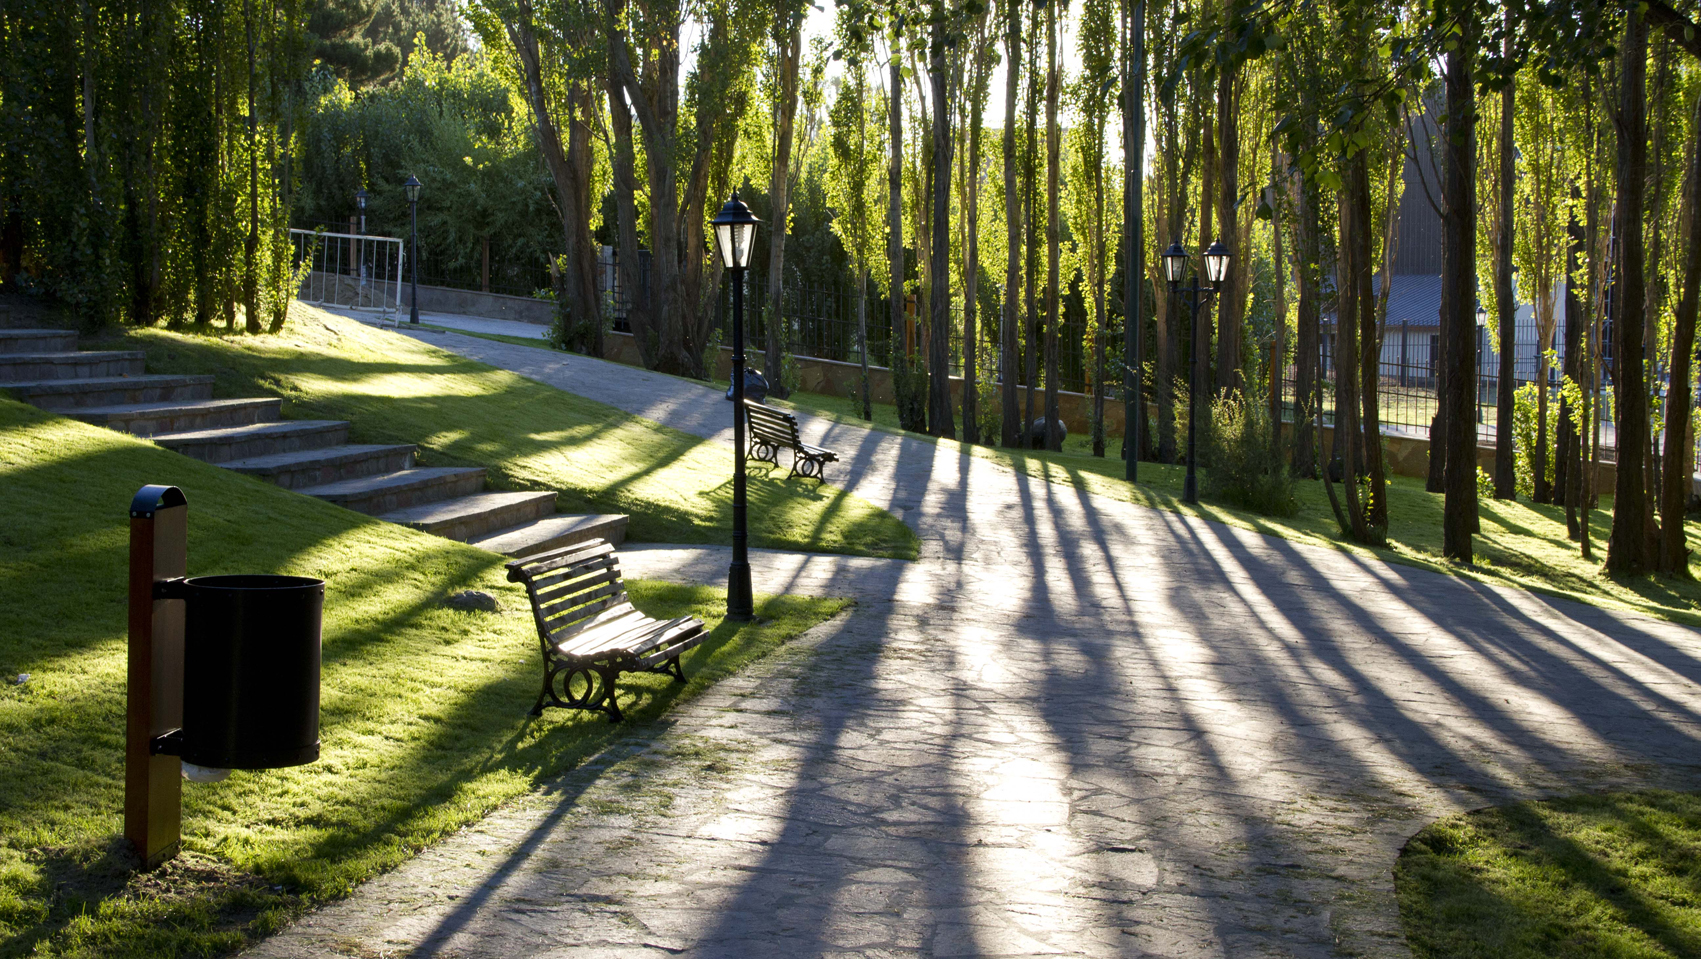 Inauguramos el Parque Anfiteatro del Bosque de El Calafate, Santa Cruz